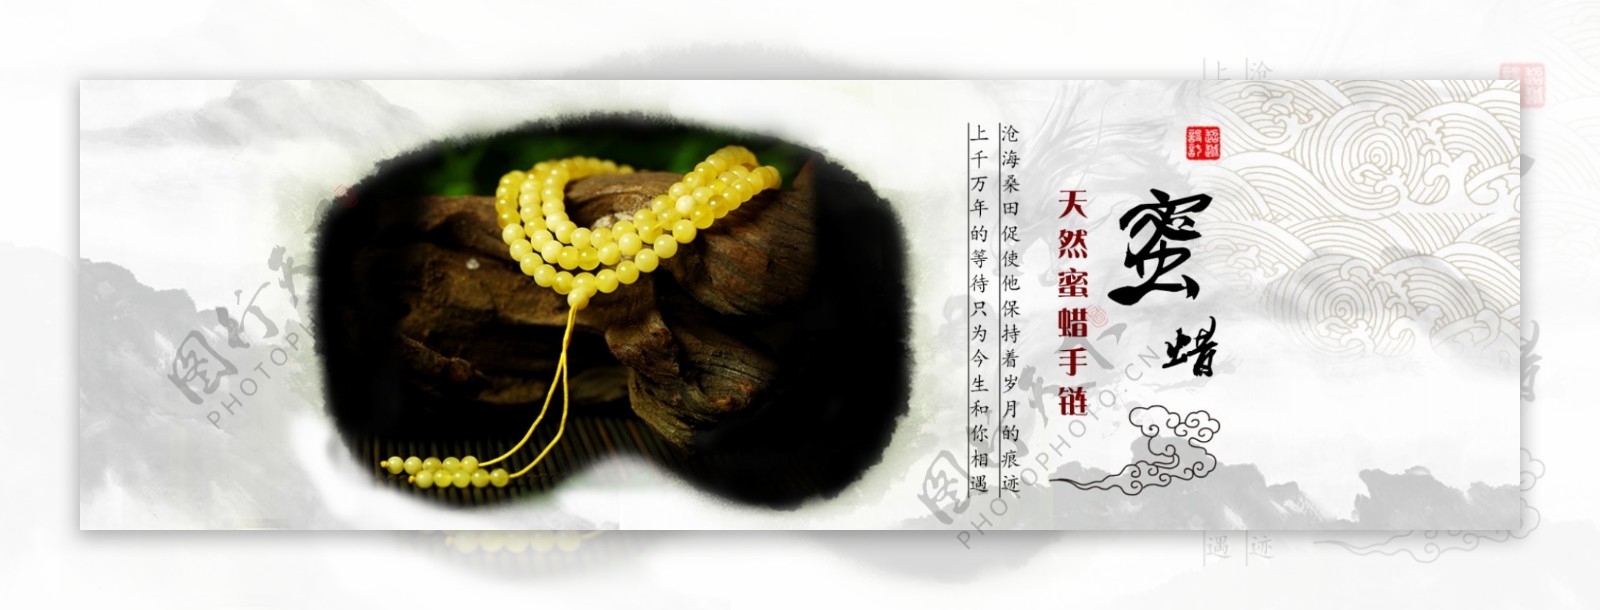 中国风天然蜜蜡手链海报